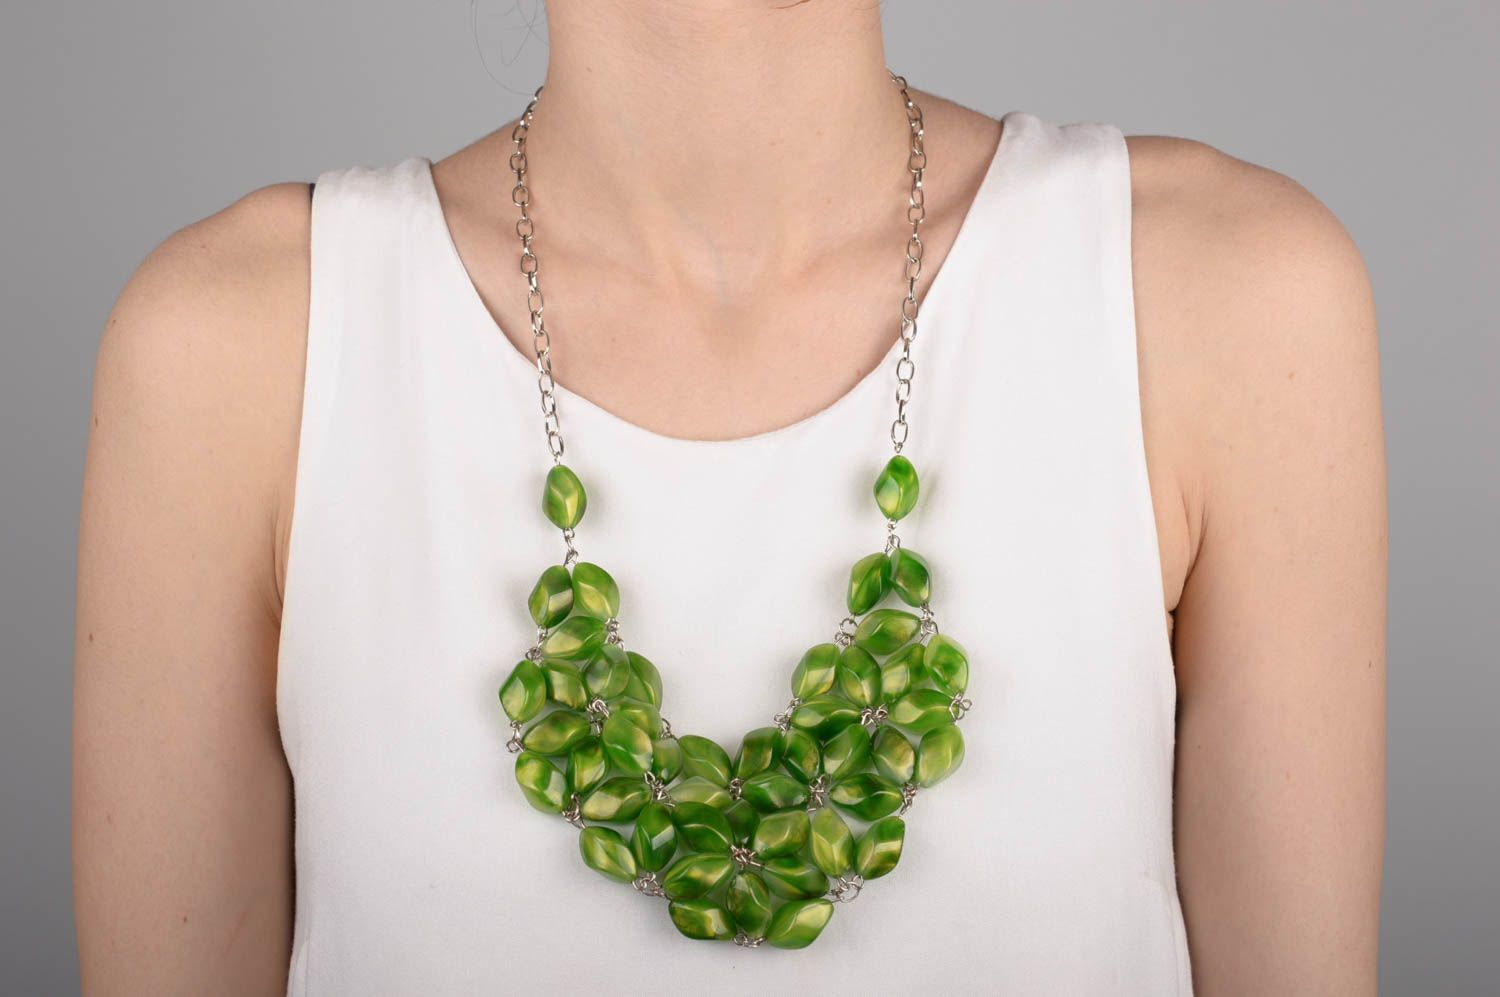 Collier Halskette handmade schöne Kette groß Geschenk für Frauen in Grün schön foto 5